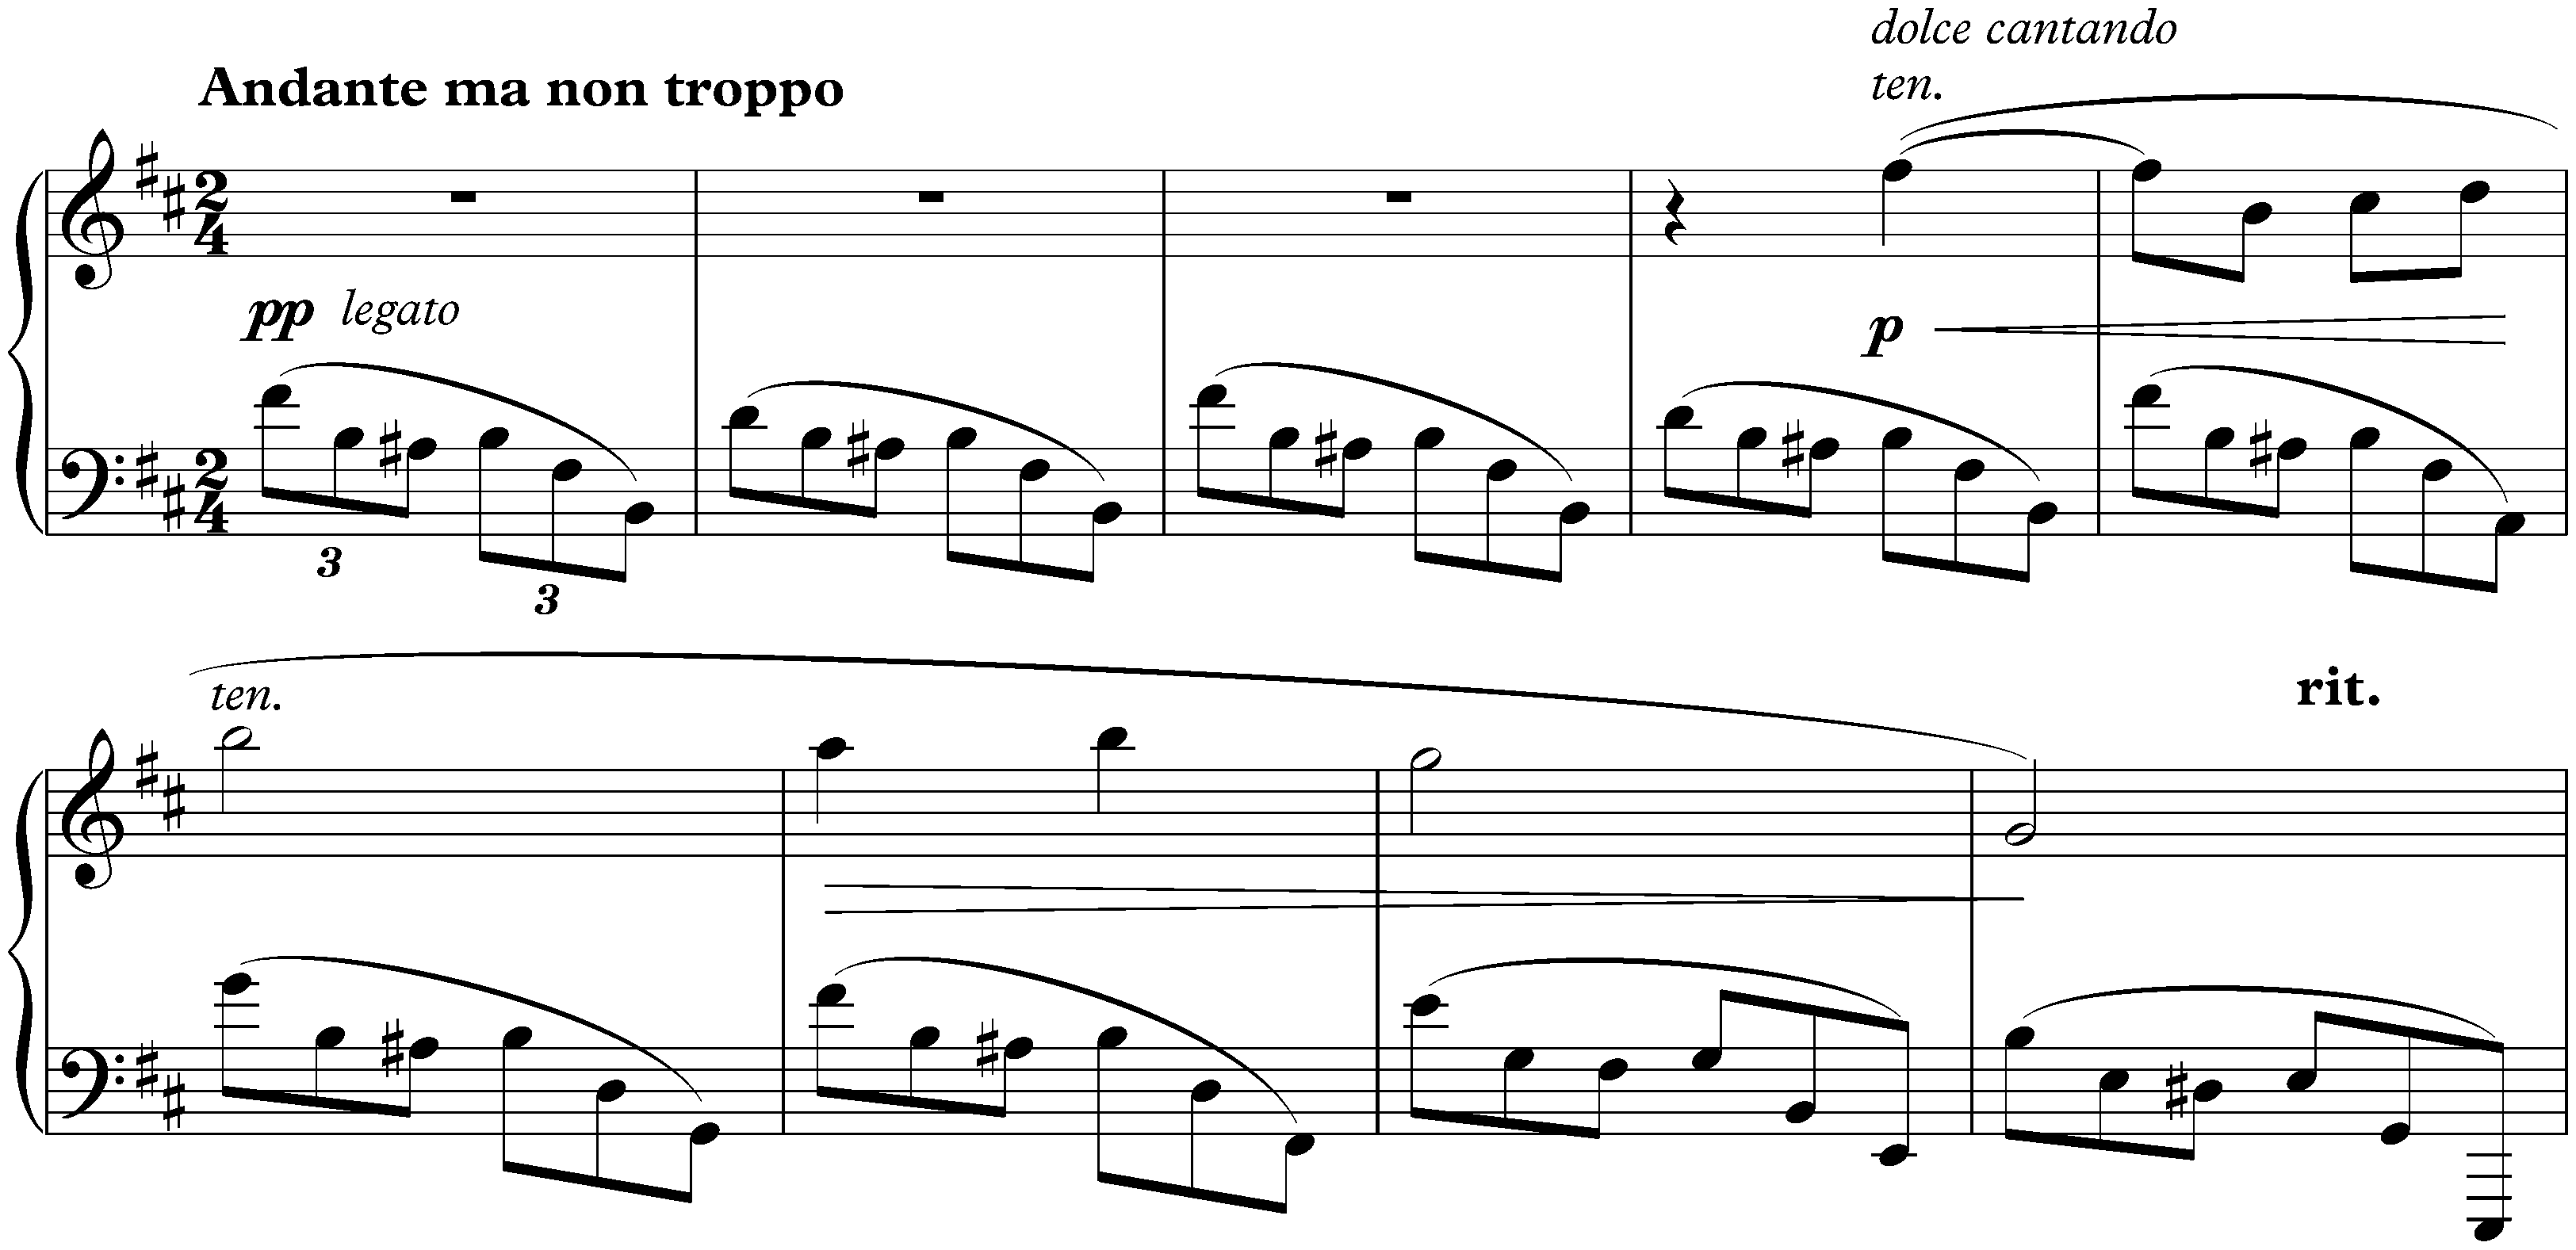 Nine Preludes, op. 1; 1. Andante ma non troppo